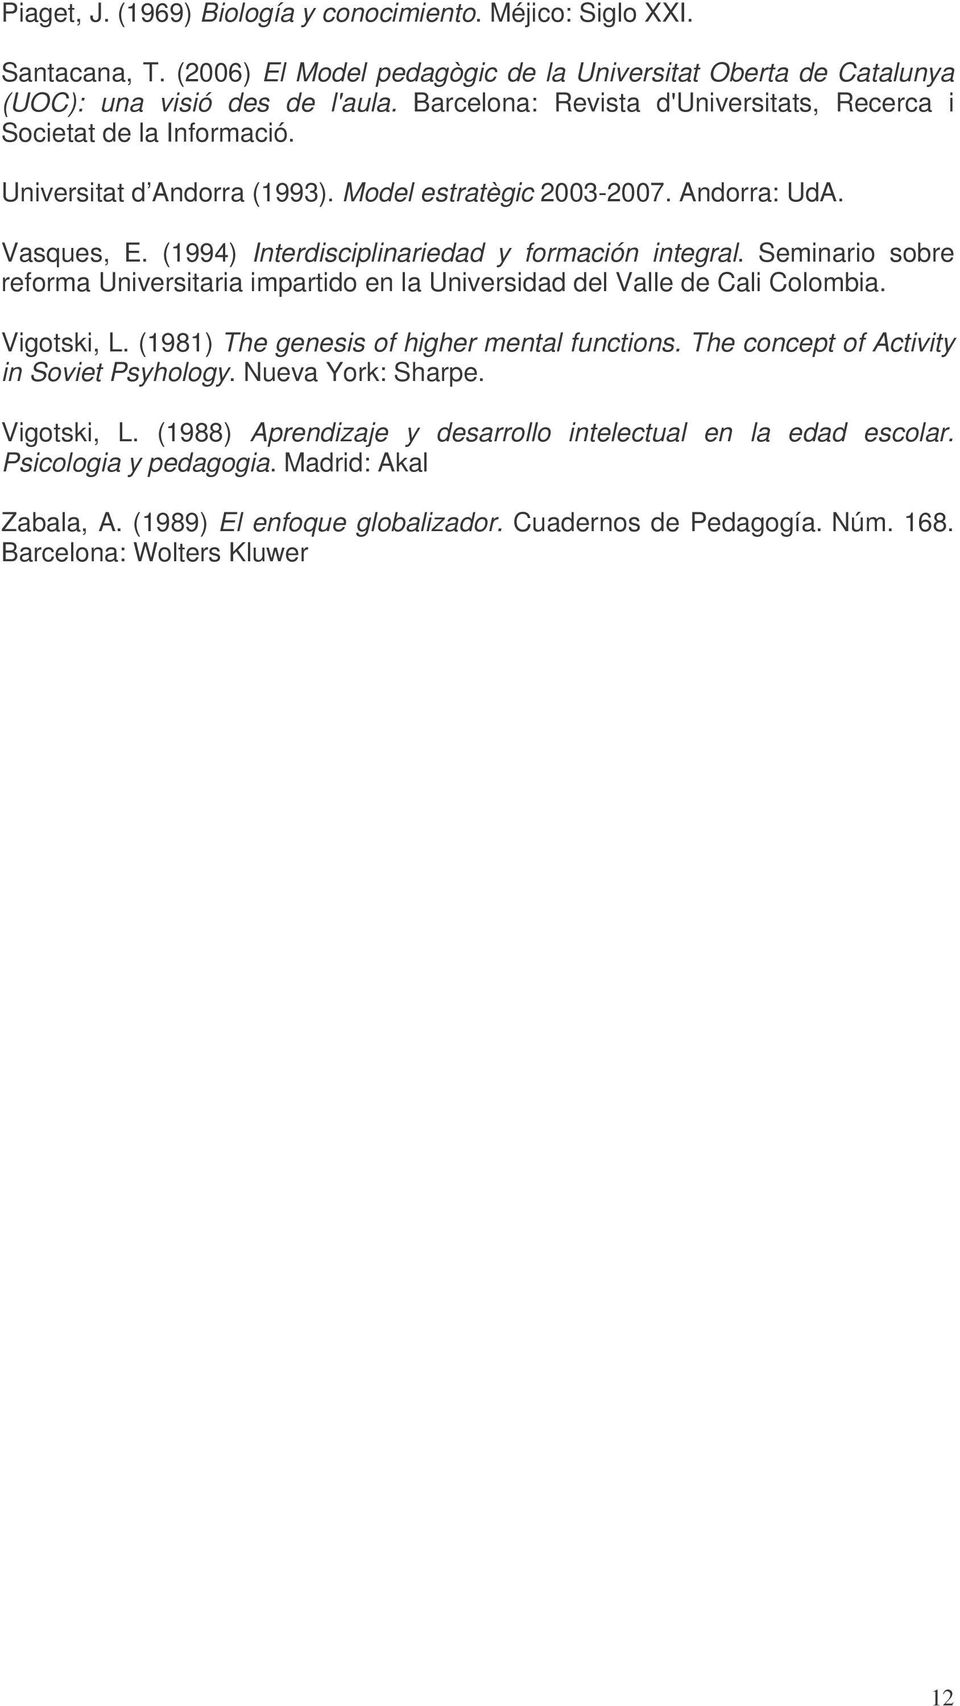 (1994) Interdisciplinariedad y formación integral. Seminario sobre reforma Universitaria impartido en la Universidad del Valle de Cali Colombia. Vigotski, L.